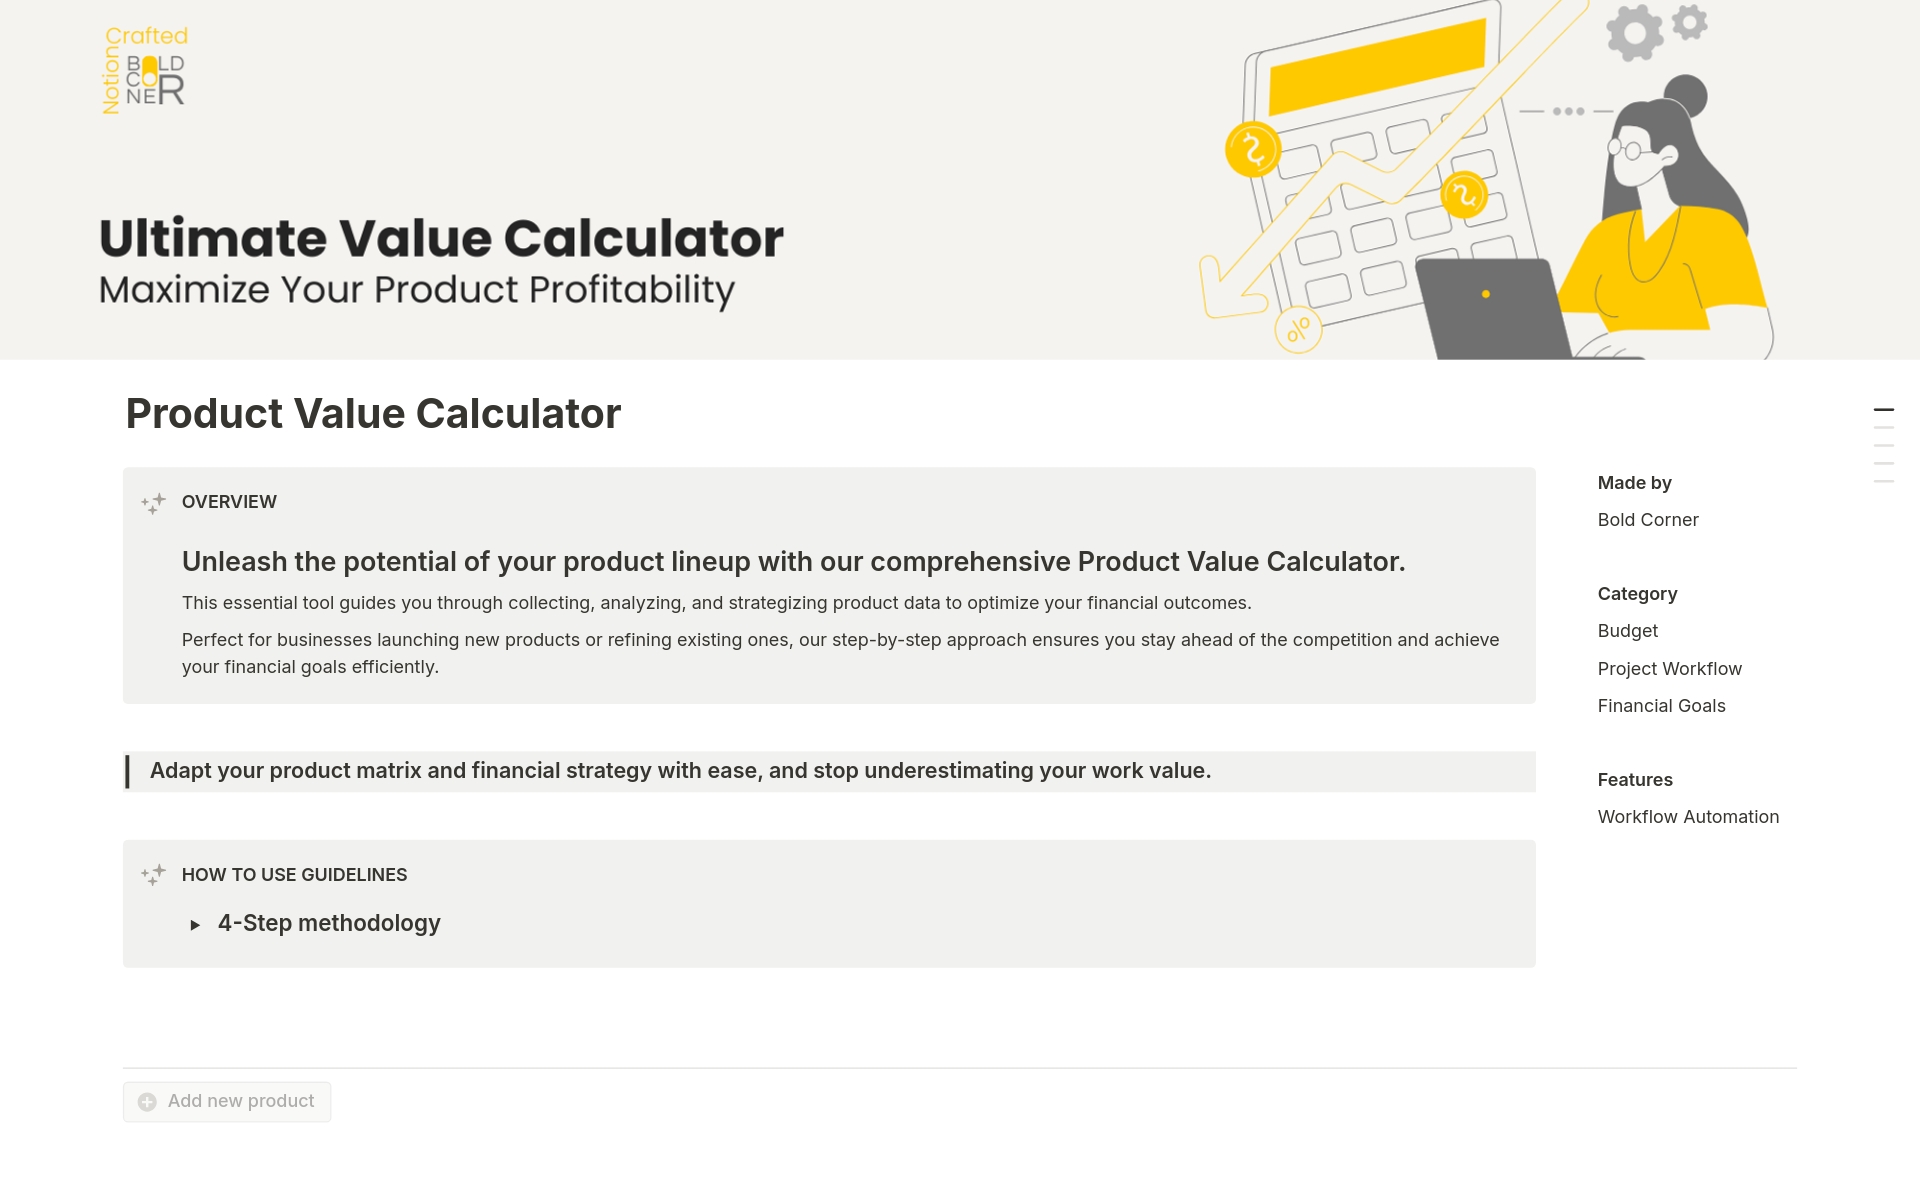 Uma prévia do modelo para Product Value Calculator